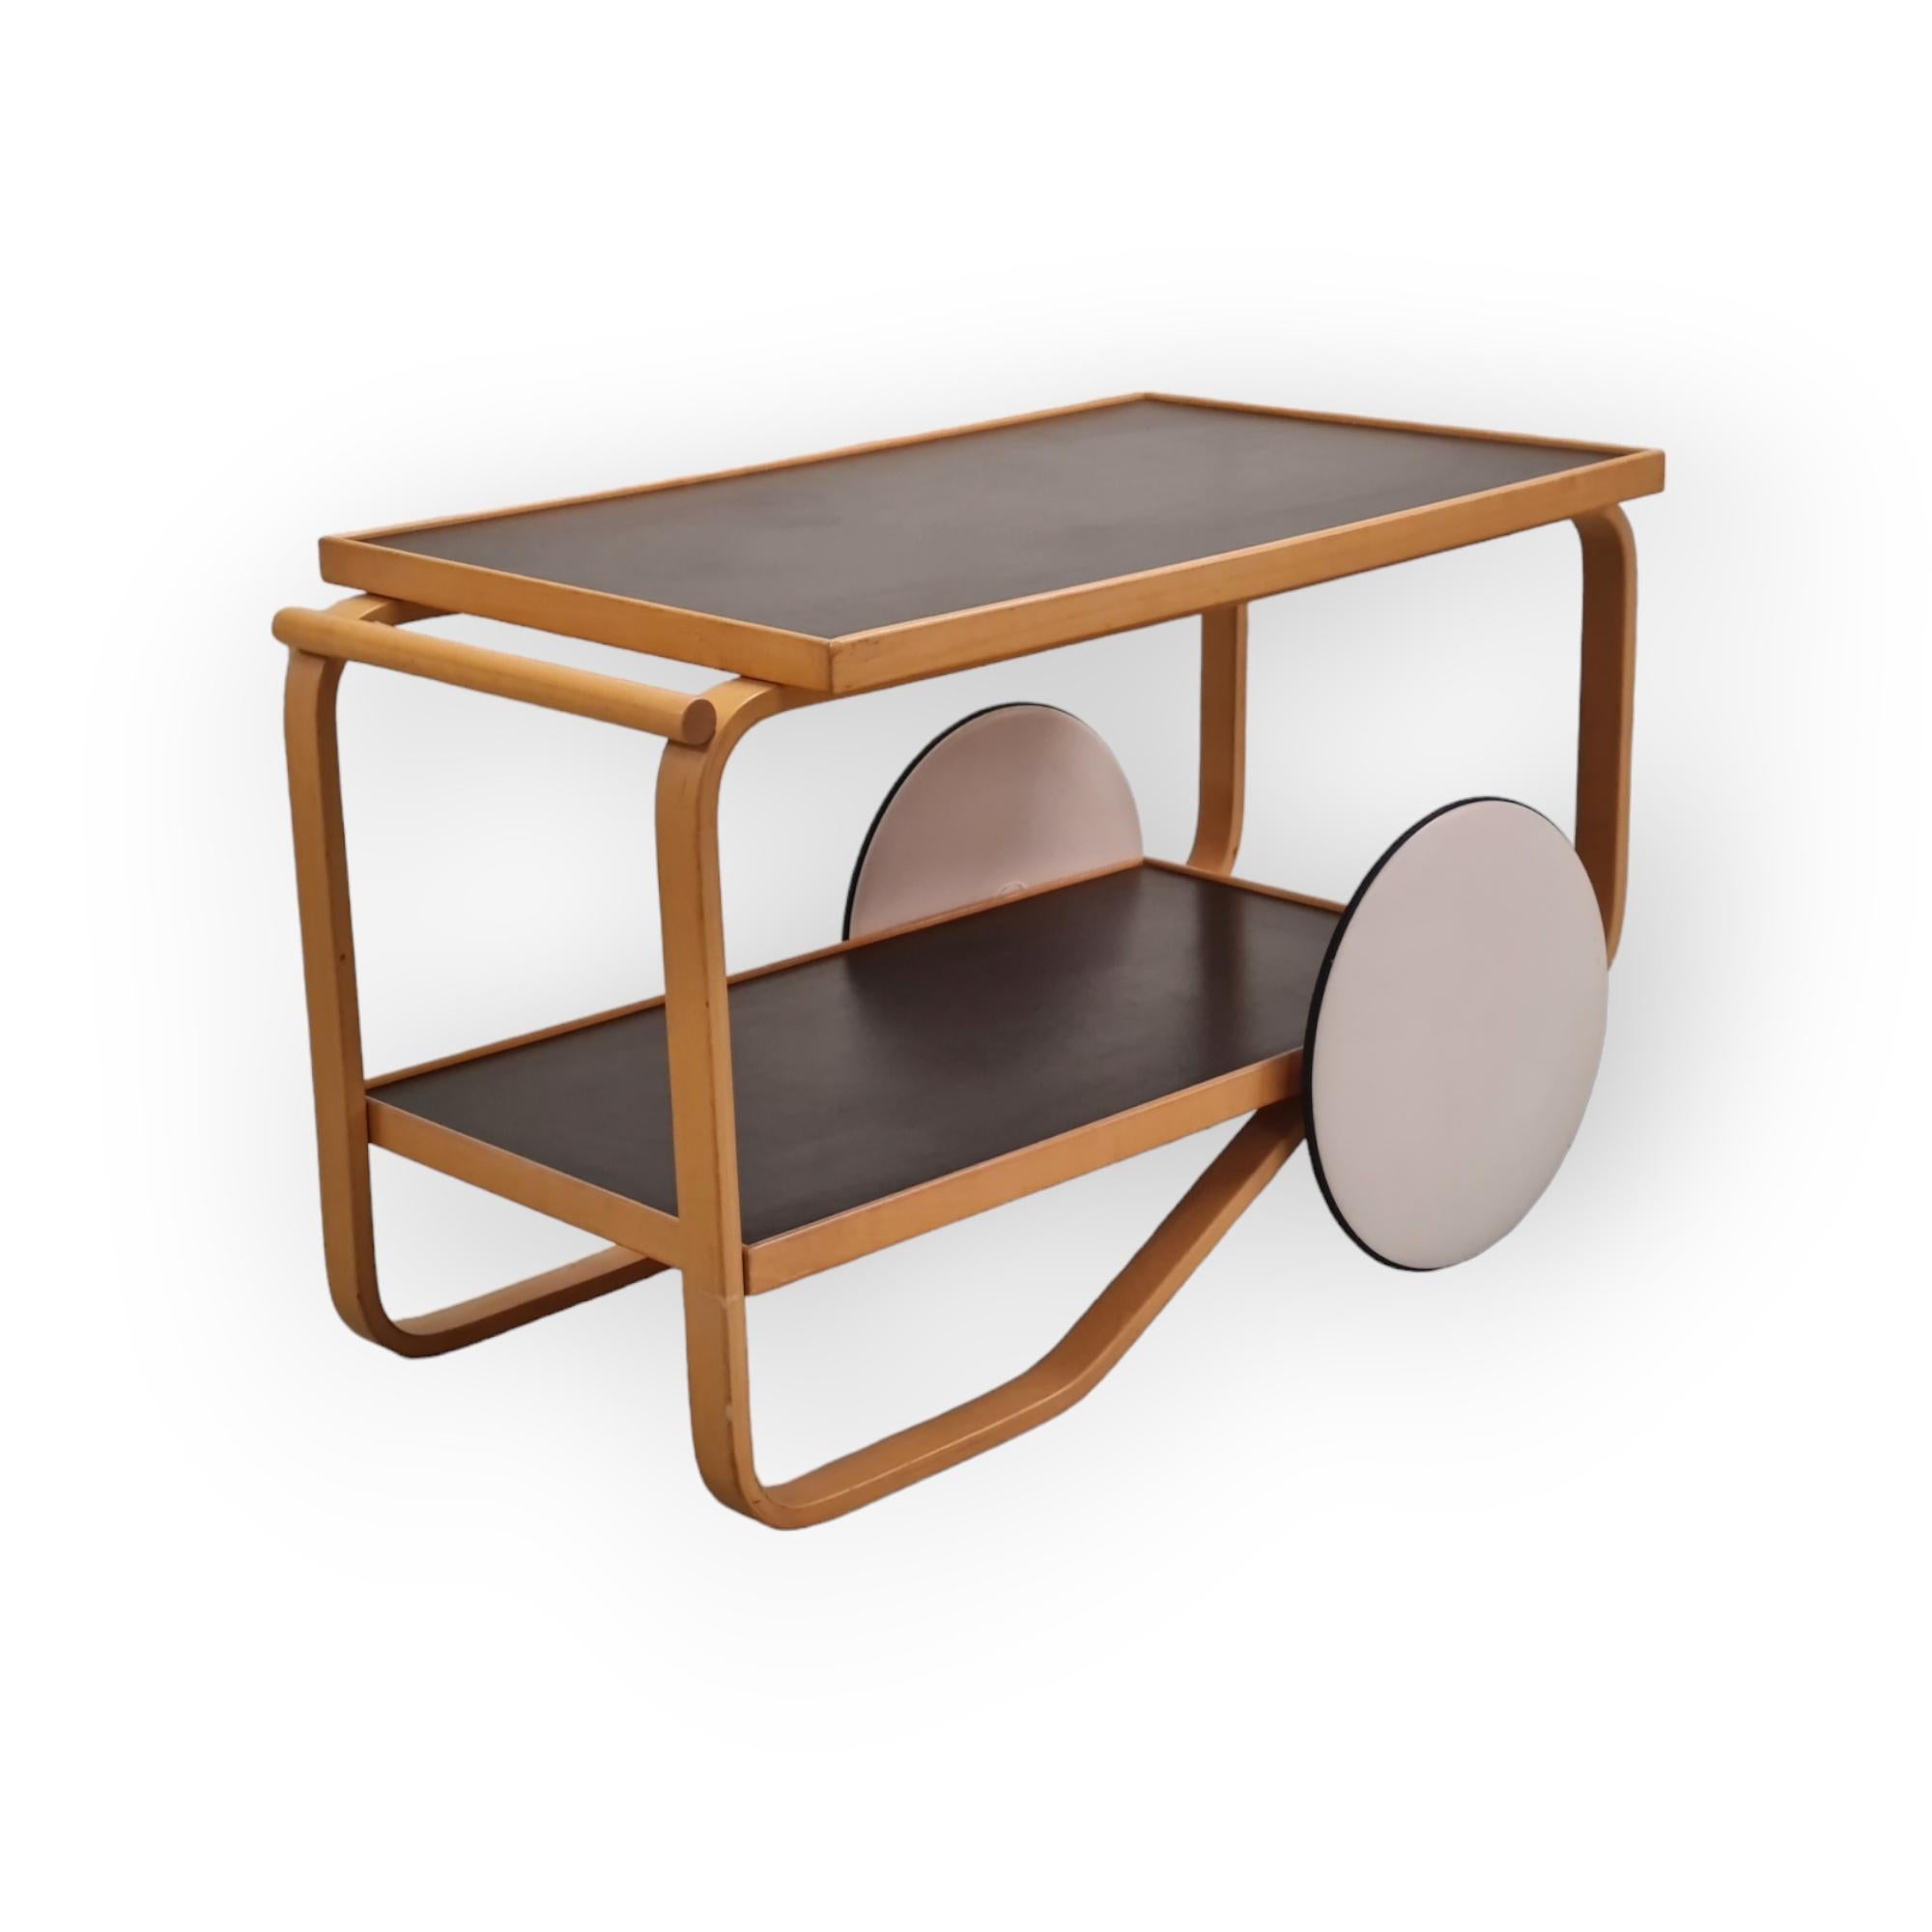 Alvar Aalto a présenté ce modèle de chariot pour la première fois dans les années 1930. C'est l'un des plus simples de sa série de charrettes. Cette pièce s'inspire de la culture du thé britannique et des œuvres en bois japonaises.
Ce chariot simple